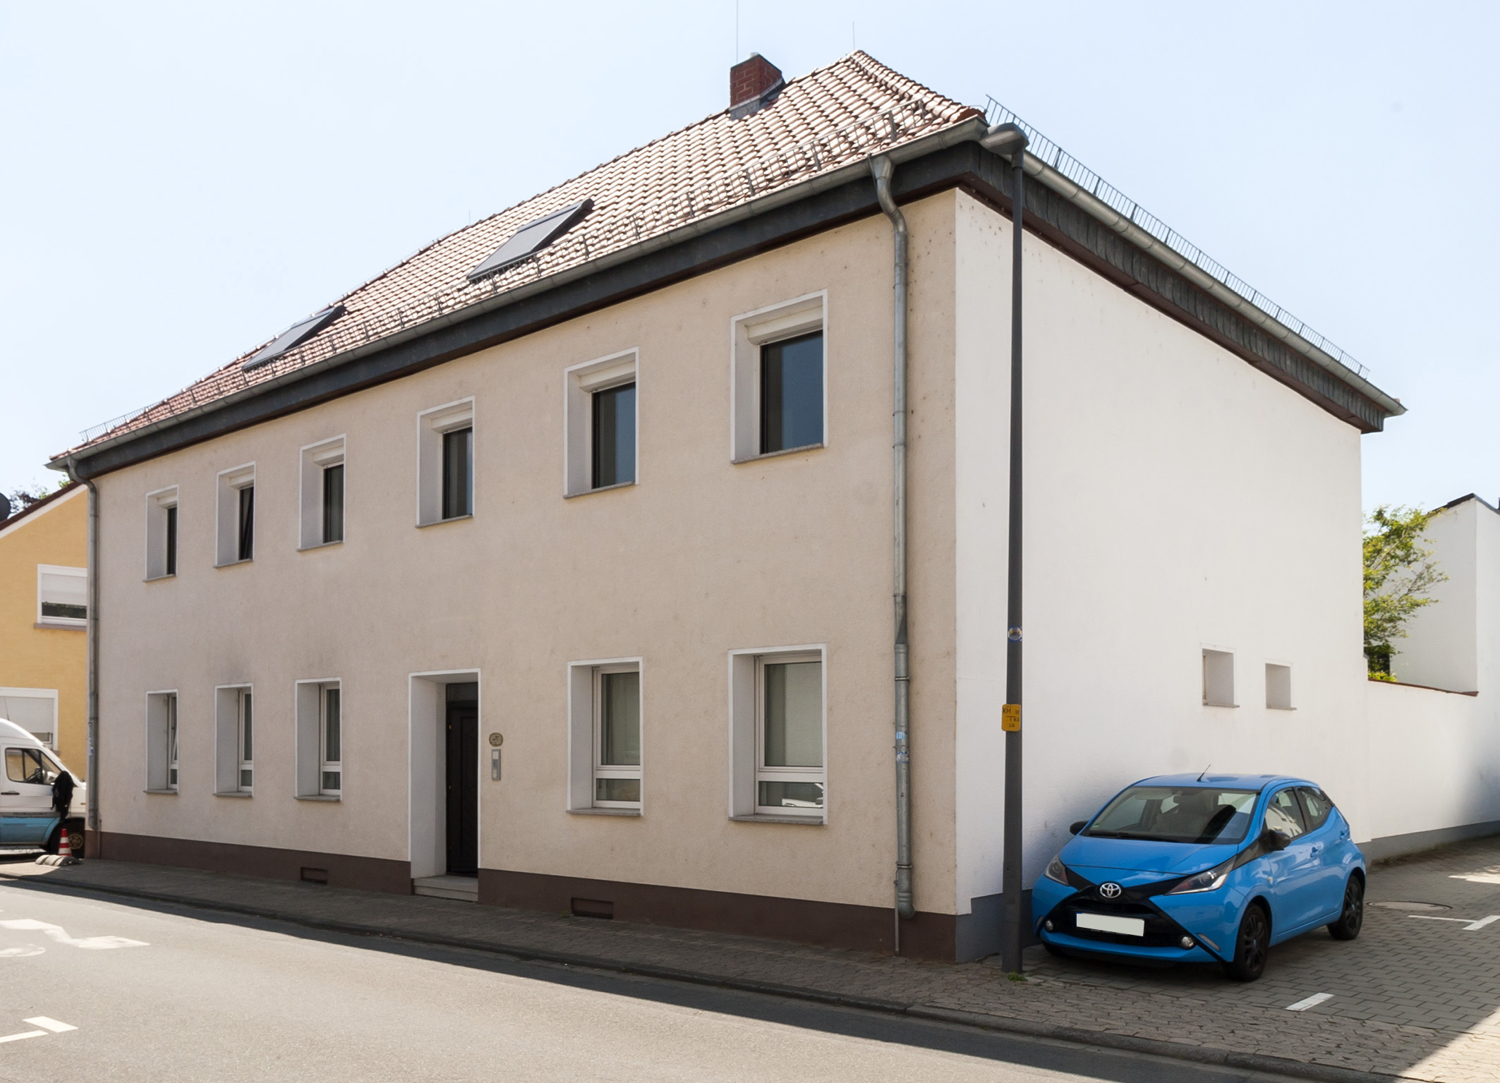 457 m² Wohnfläche in einem 3-Familienhaus mit Nebengebäude, Doppelgarage und Garten in Griesheim